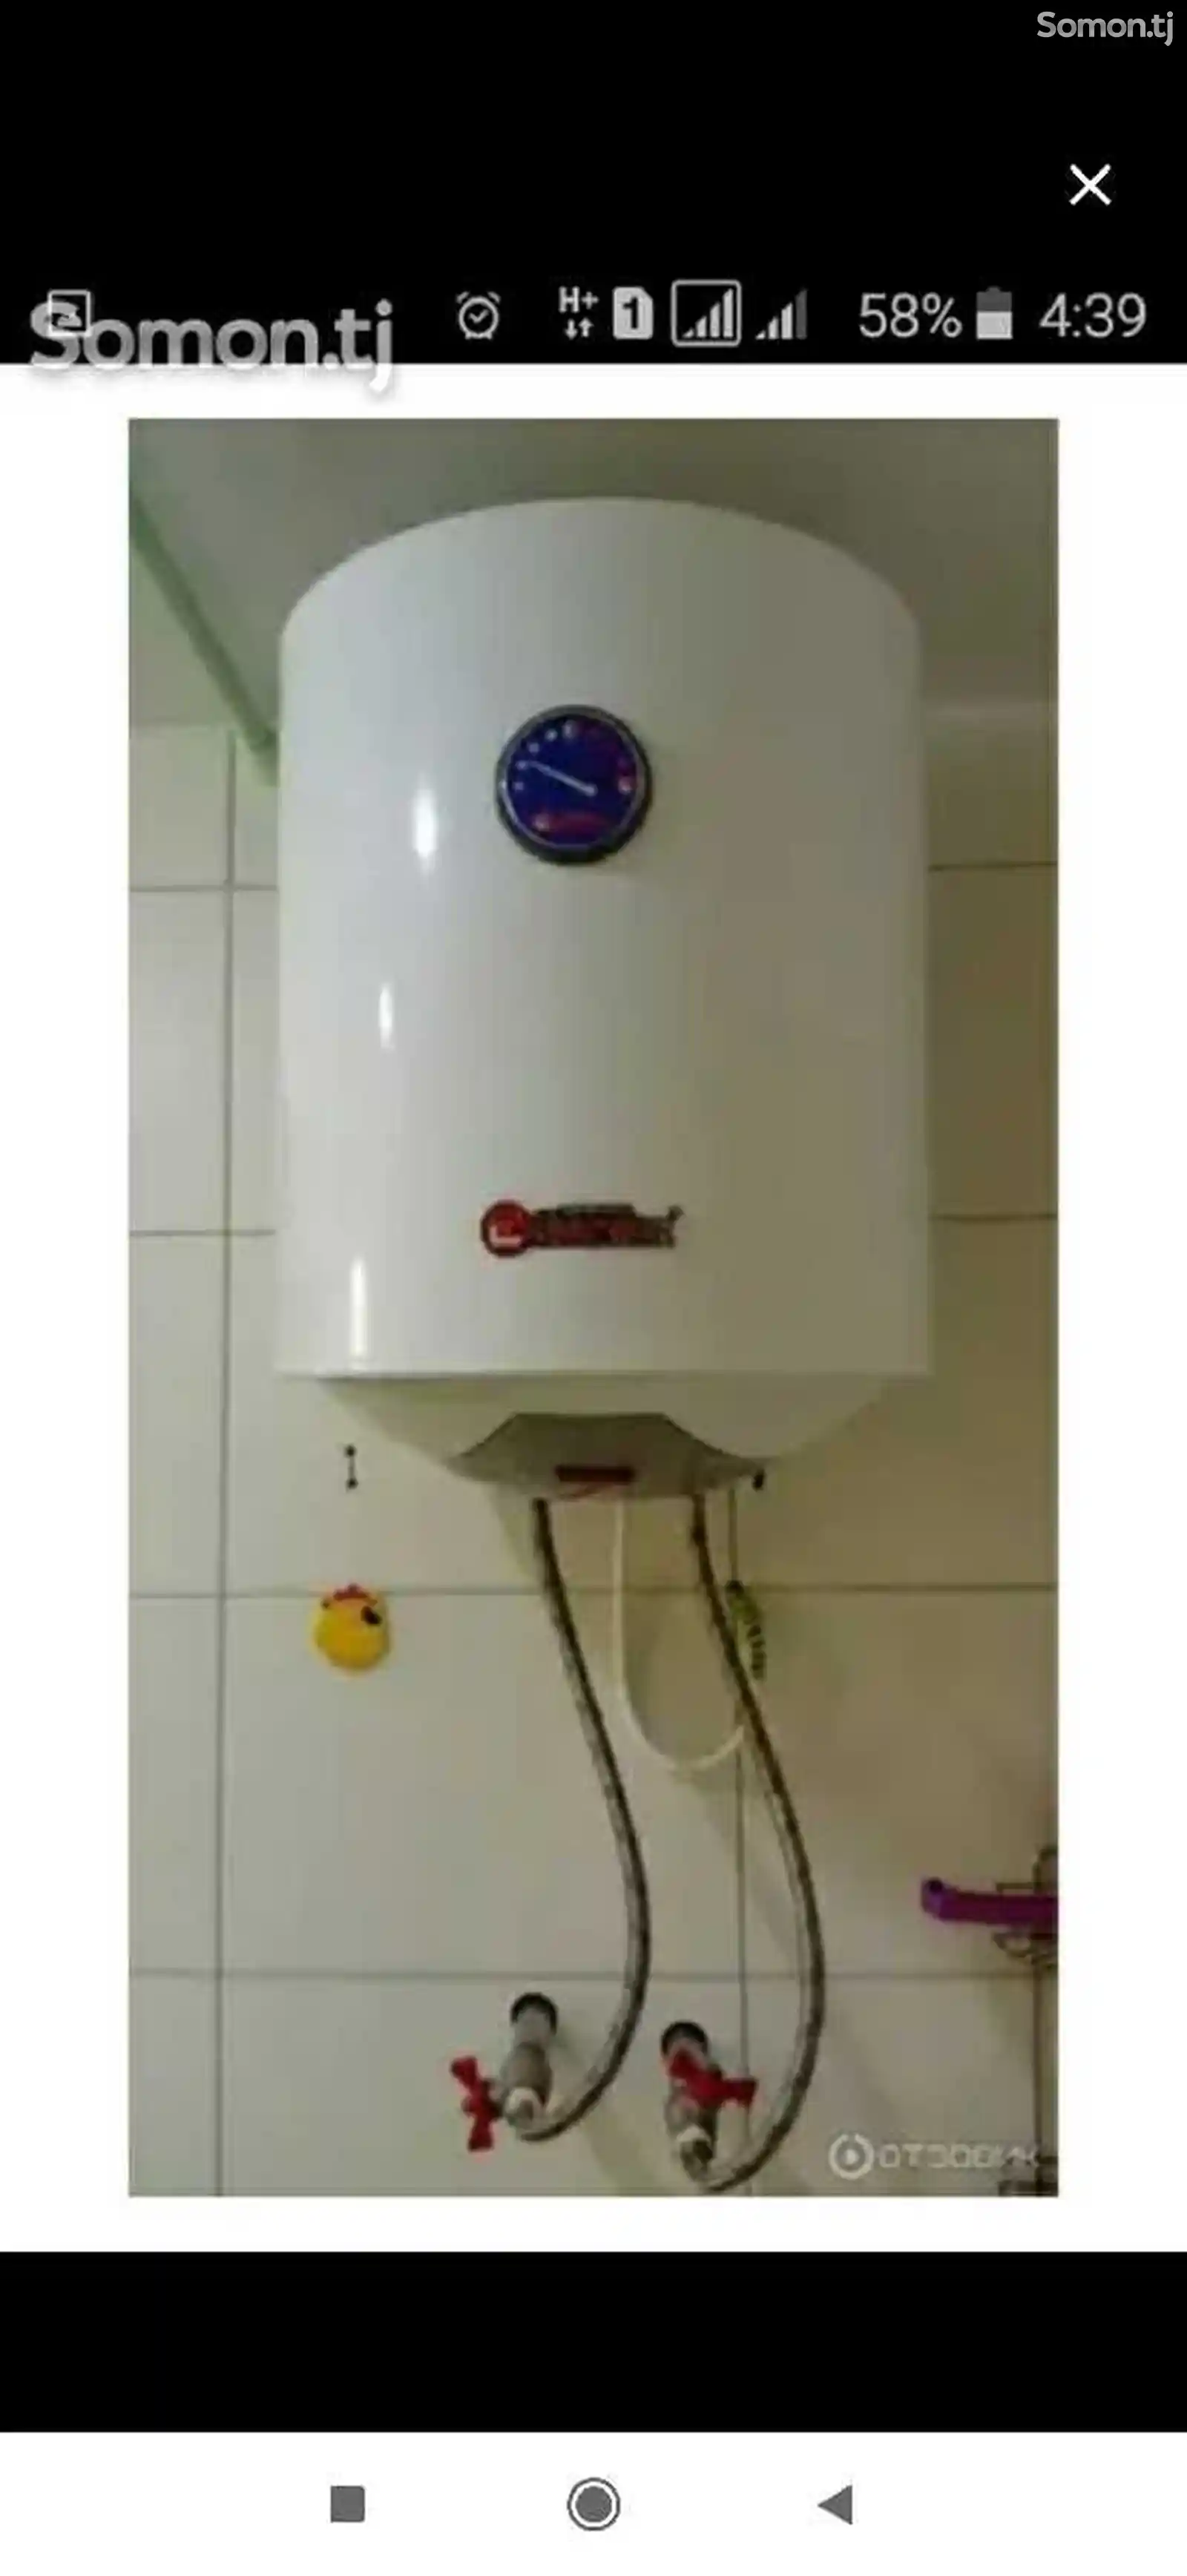 Услуги по ремонту и установке водонагревателей